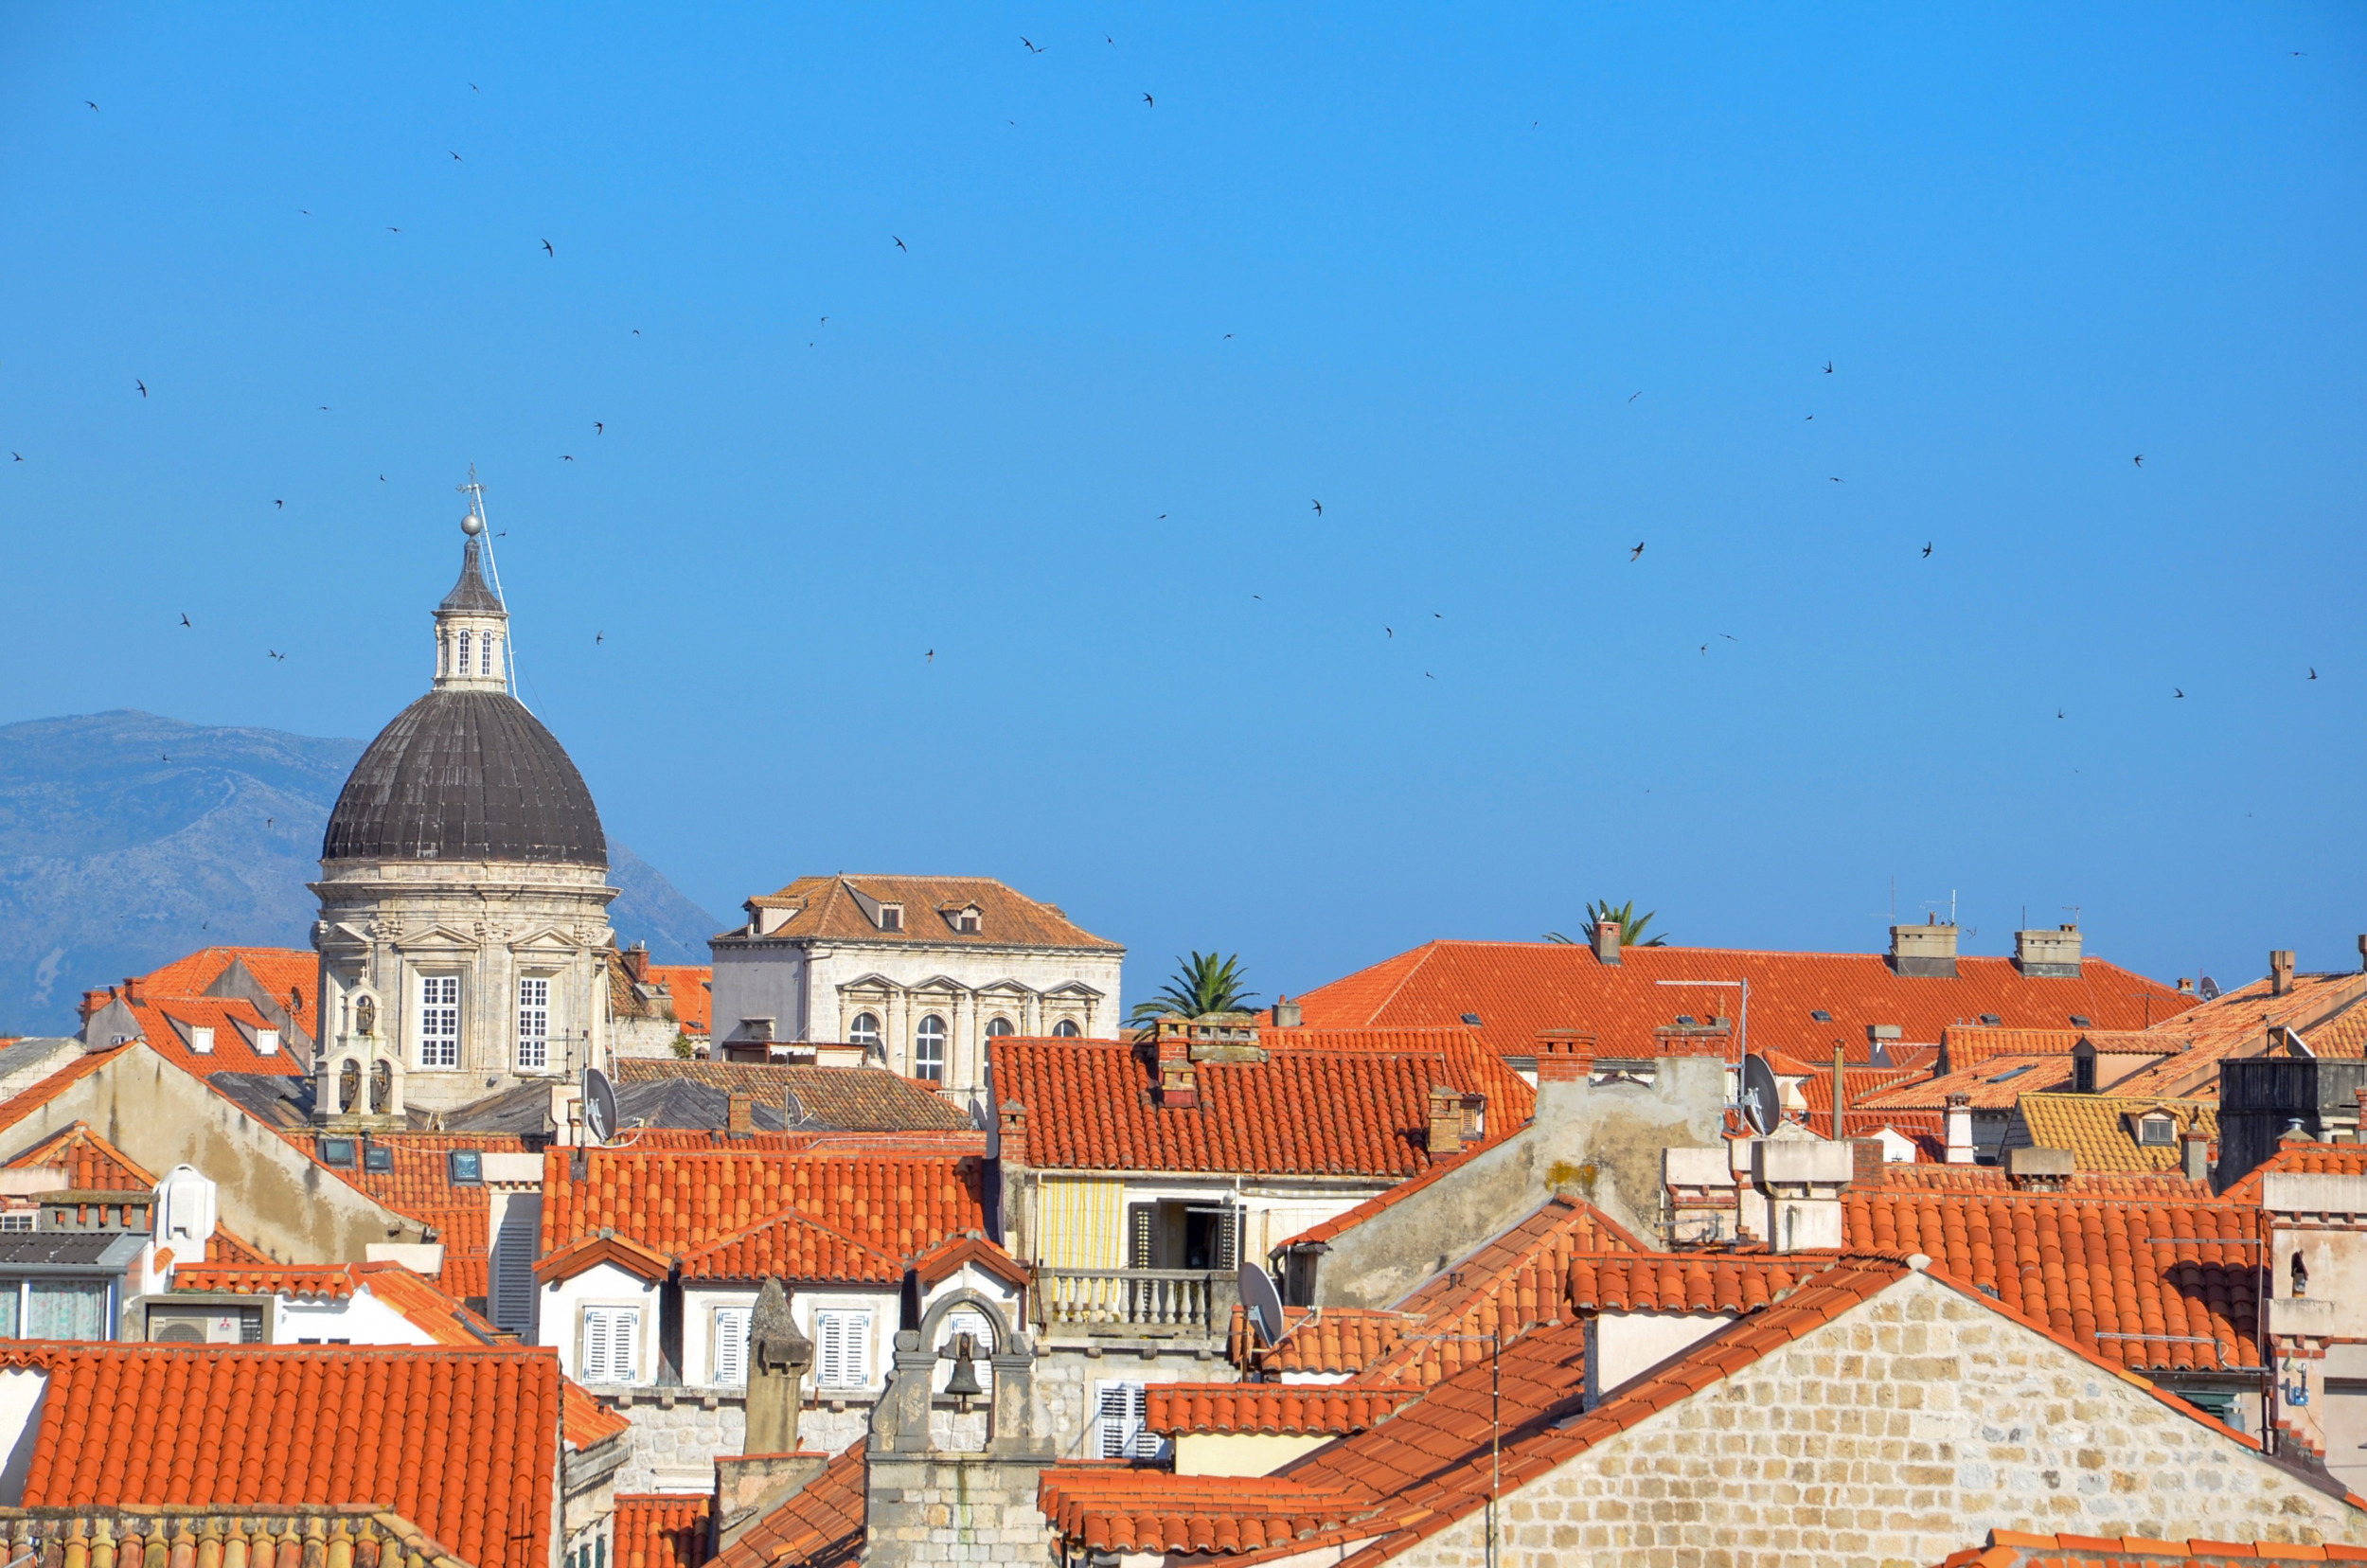 Die Kathedrale gehört sicher zu den bekanntesten Dubrovnik Sehenswürdigkeiten